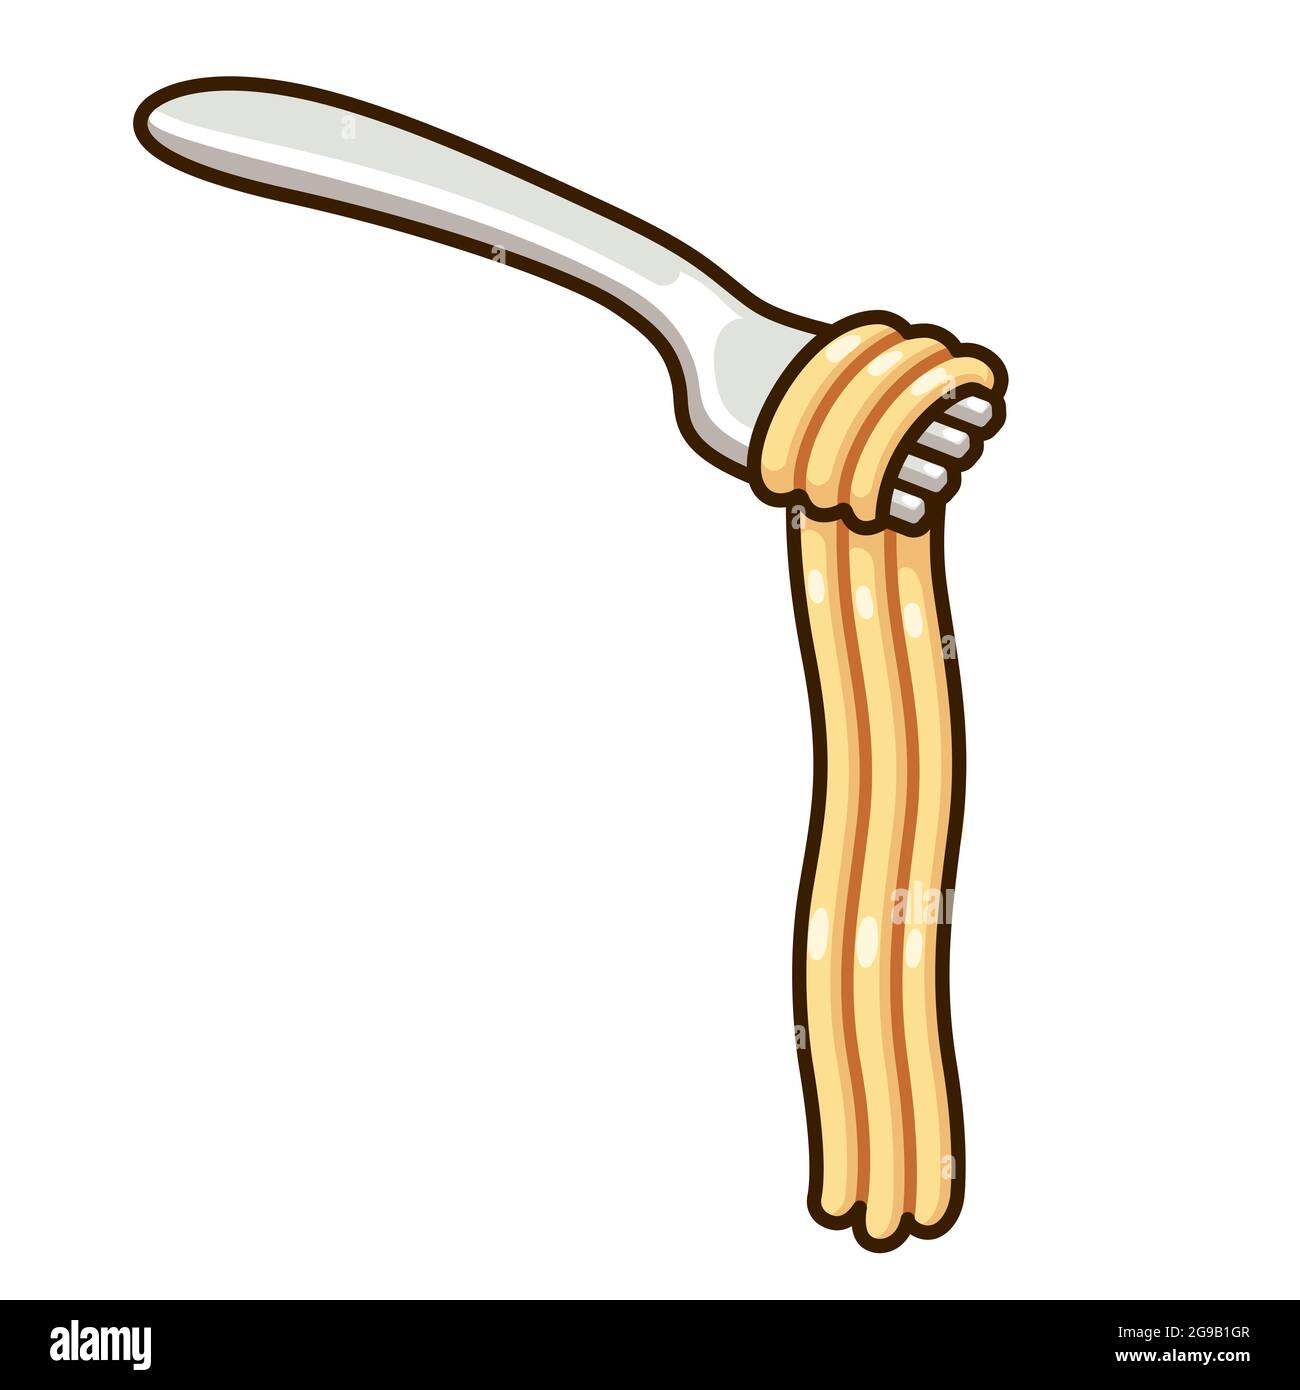 Disegno cartoon di spaghetti sulla forcella. Impiccagione di pasta lunga. Immagine vettoriale clip art. Illustrazione Vettoriale